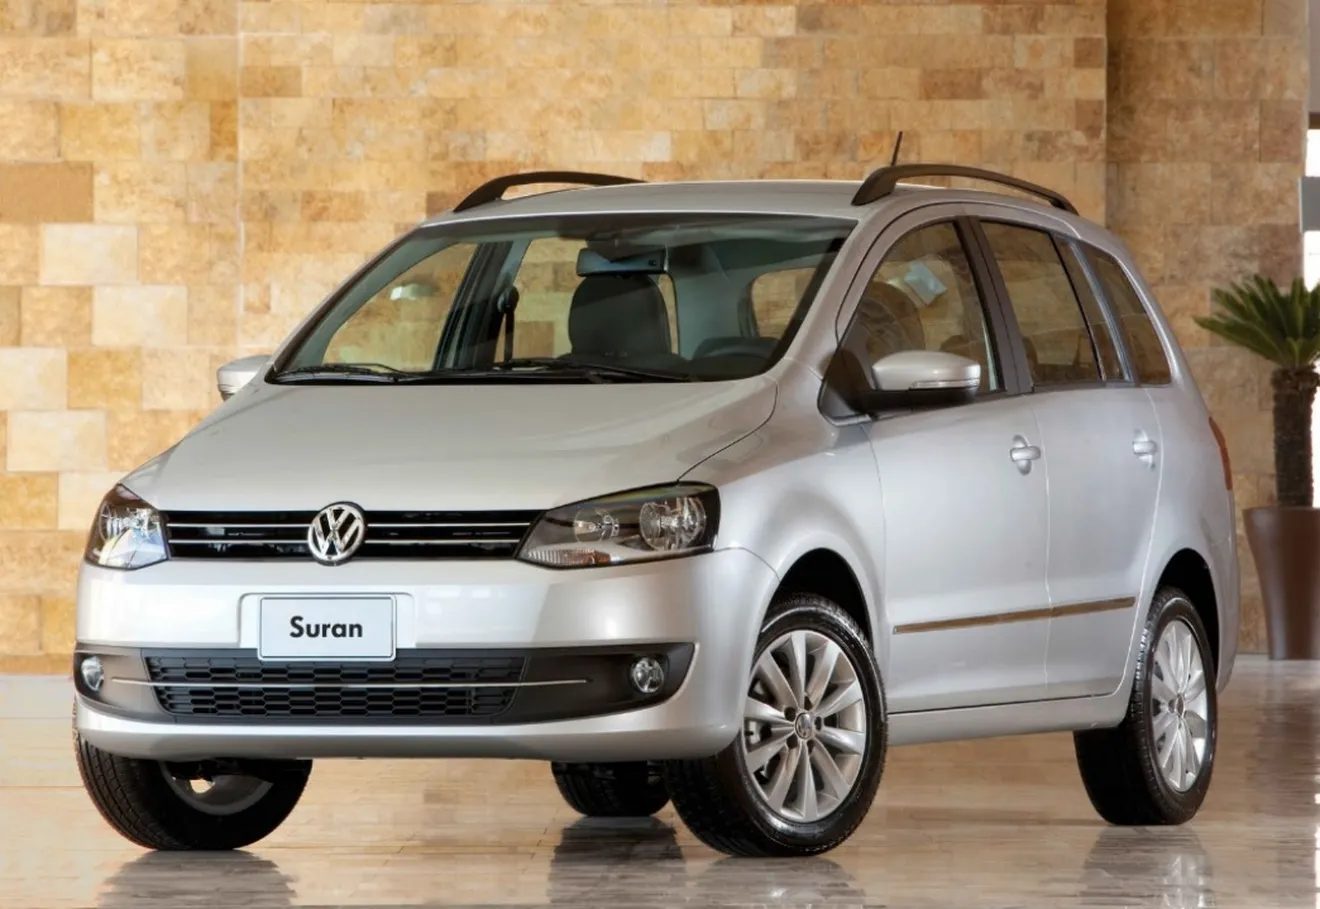 Argentina - Septiembre 2014: El Volkswagen Suran asalta el podio